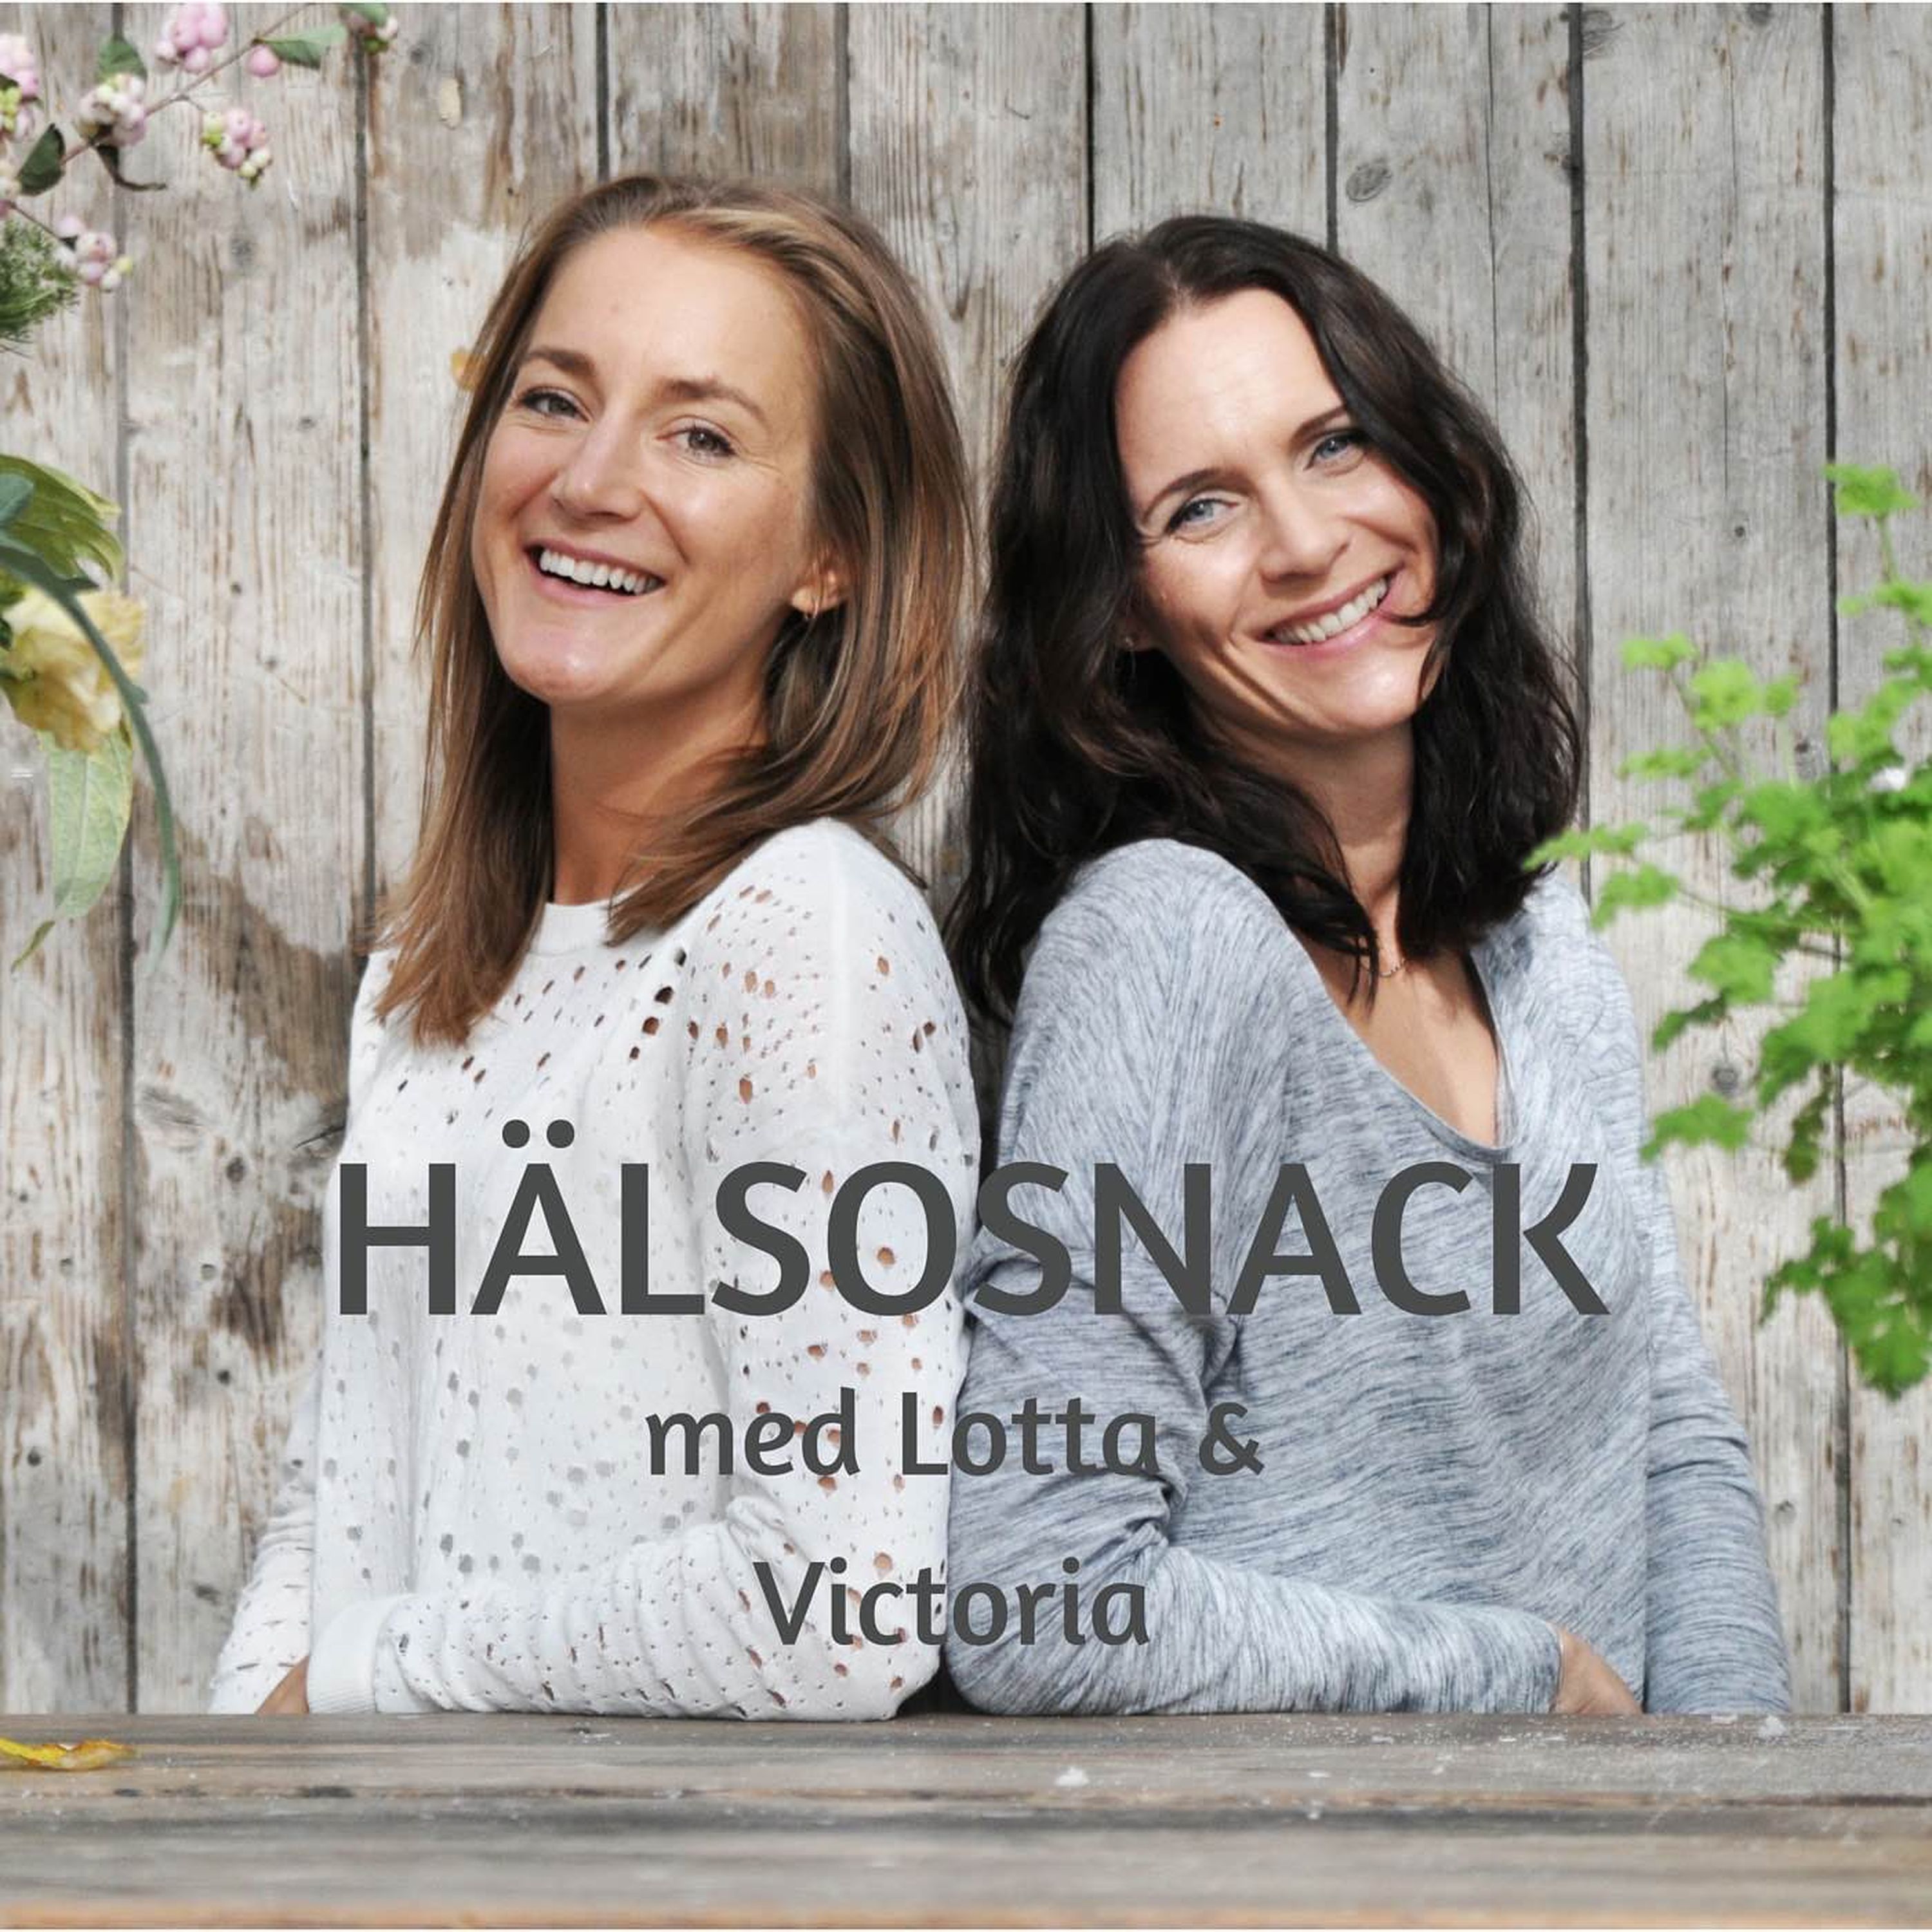 81 Maria Hellström – Energibalansering och healing